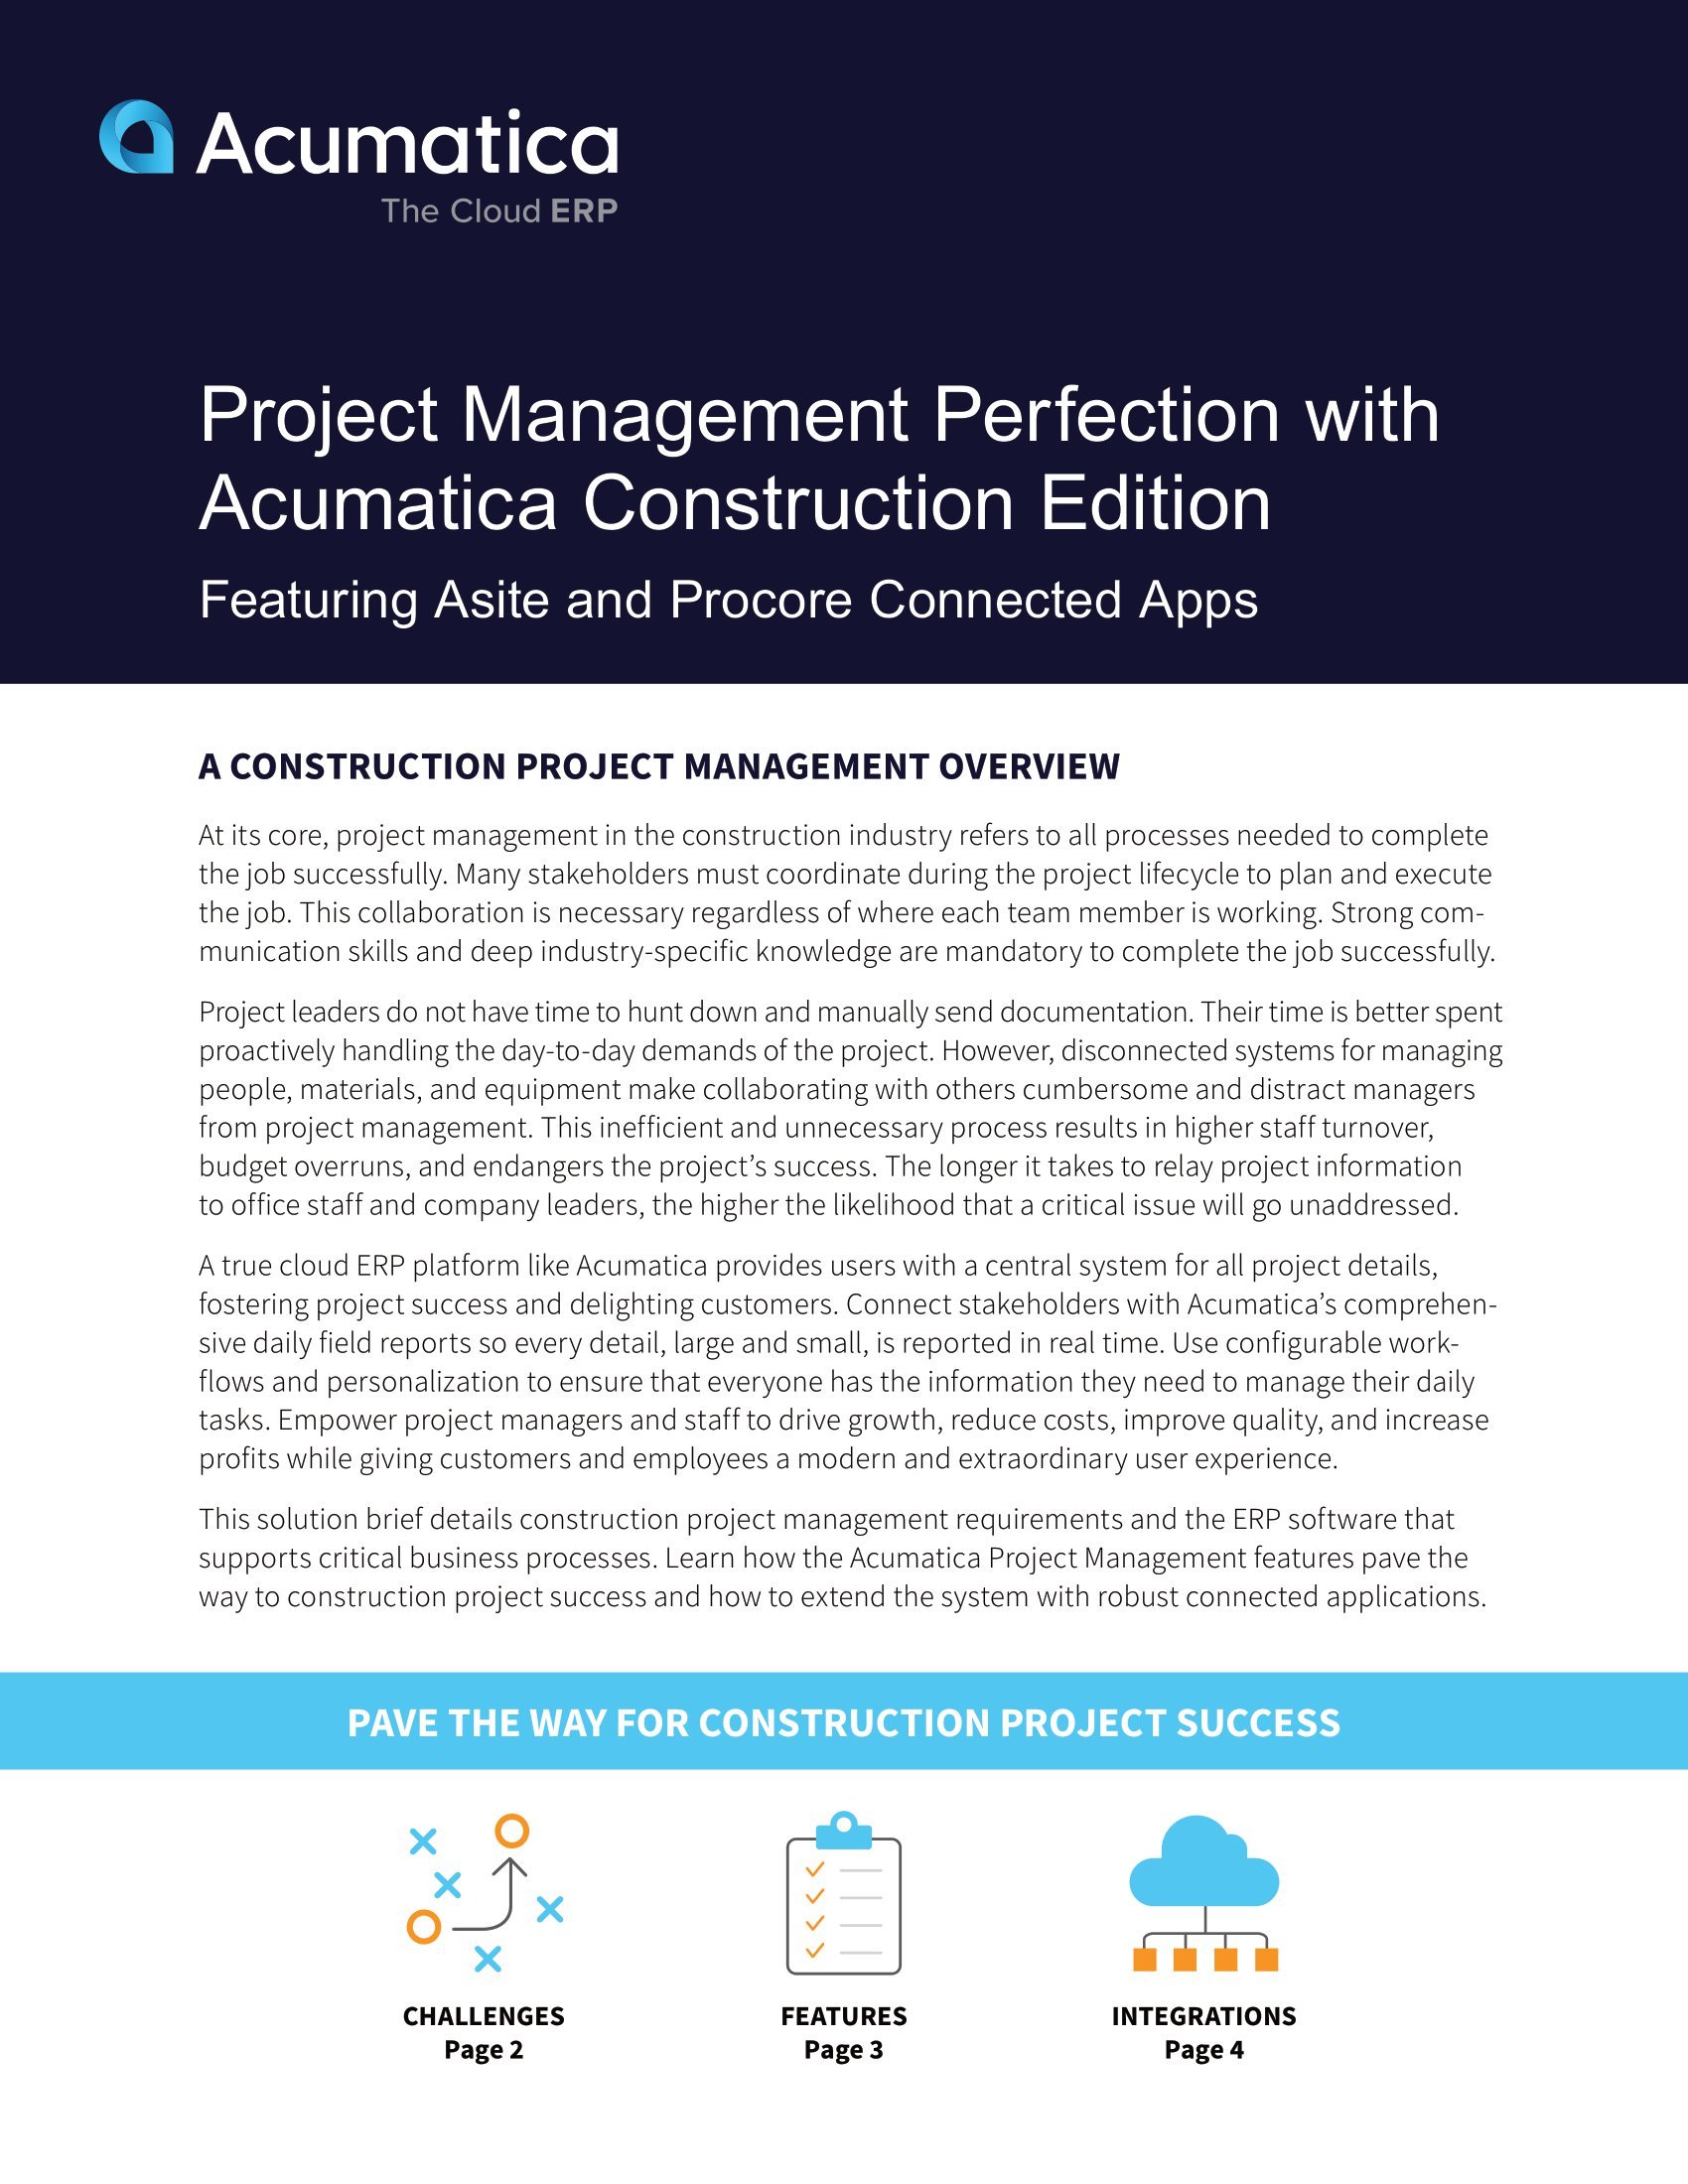 Mejore la gestión de proyectos de construcción con Acumatica Construction Edition